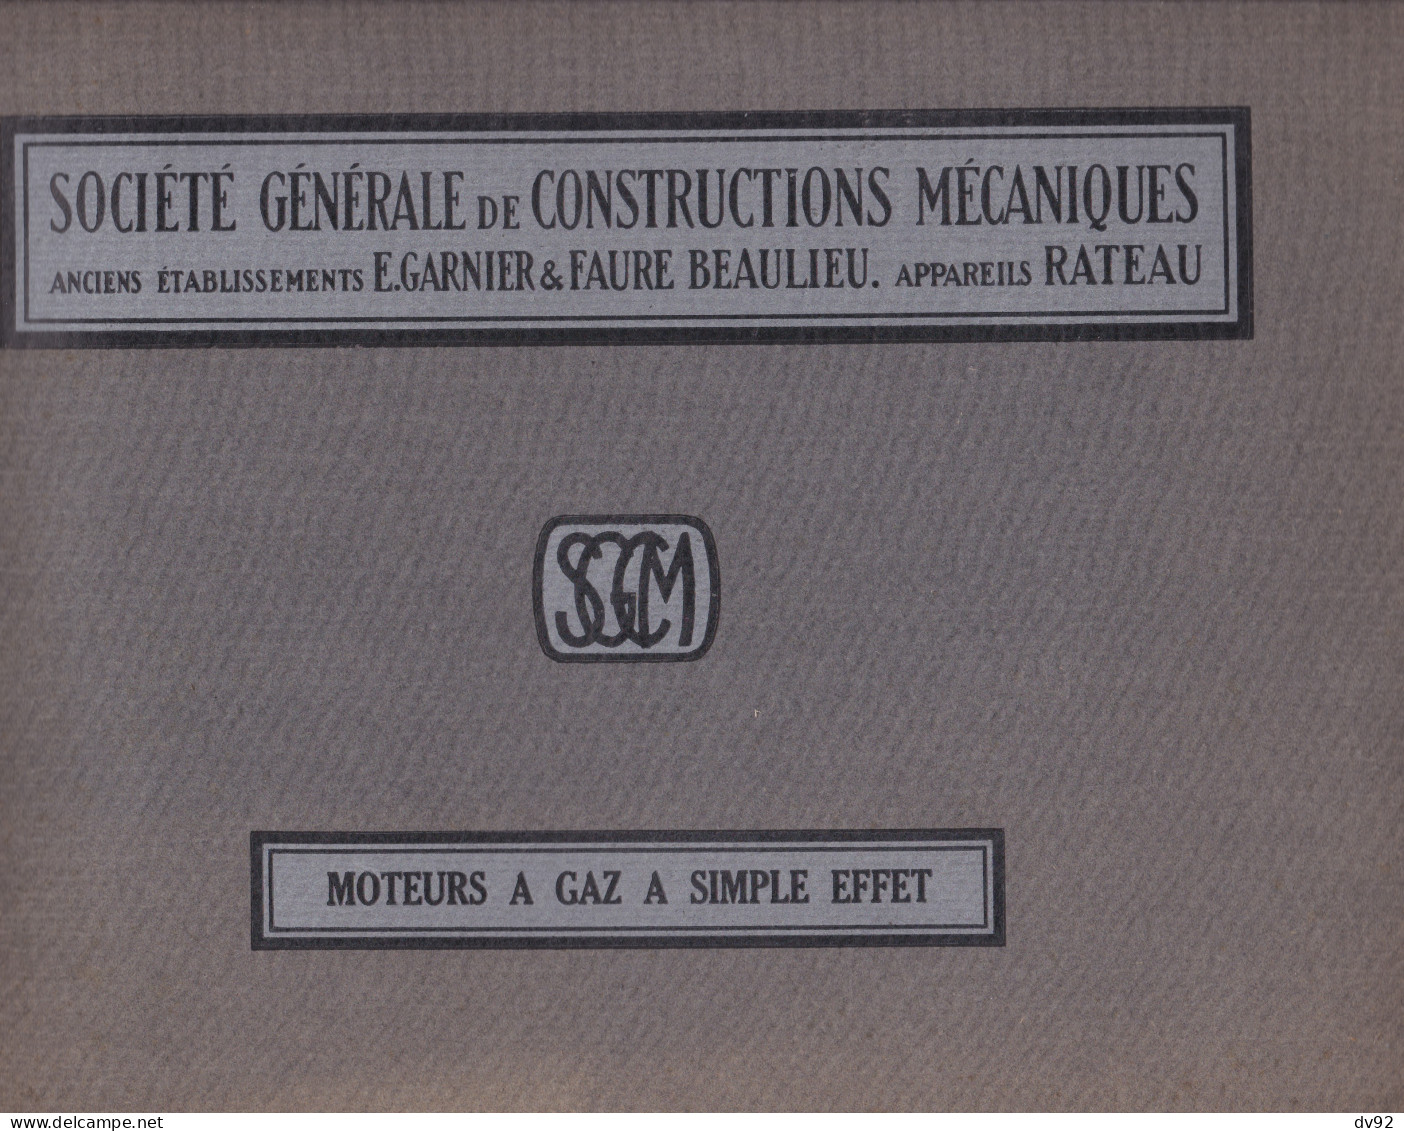 SOCIETE GENERALE DE CONSTRUCTIONS MECANIQUES ANCIENS ETABLISSEMENTS E. GARNIER & FAURE BEAULIEU APPAREILS RATEAU - Advertising